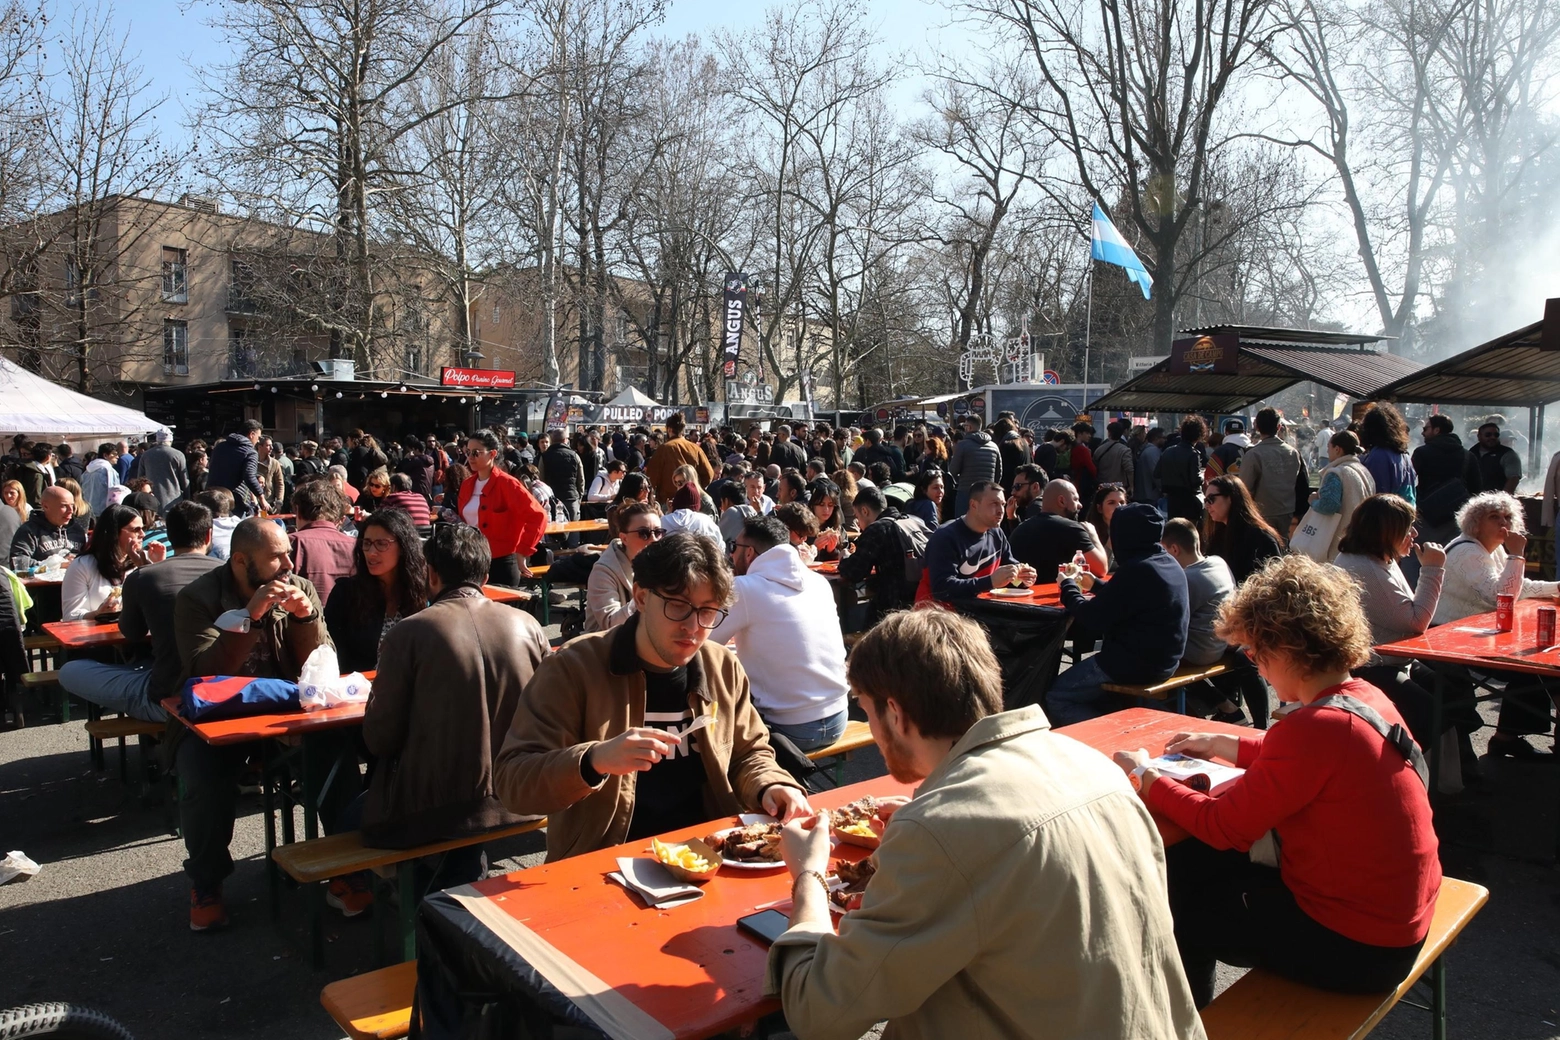 Street food festival  In migliaia ai Giardini  "Rifiuti e violazioni"  Il Comune chiederà i danni